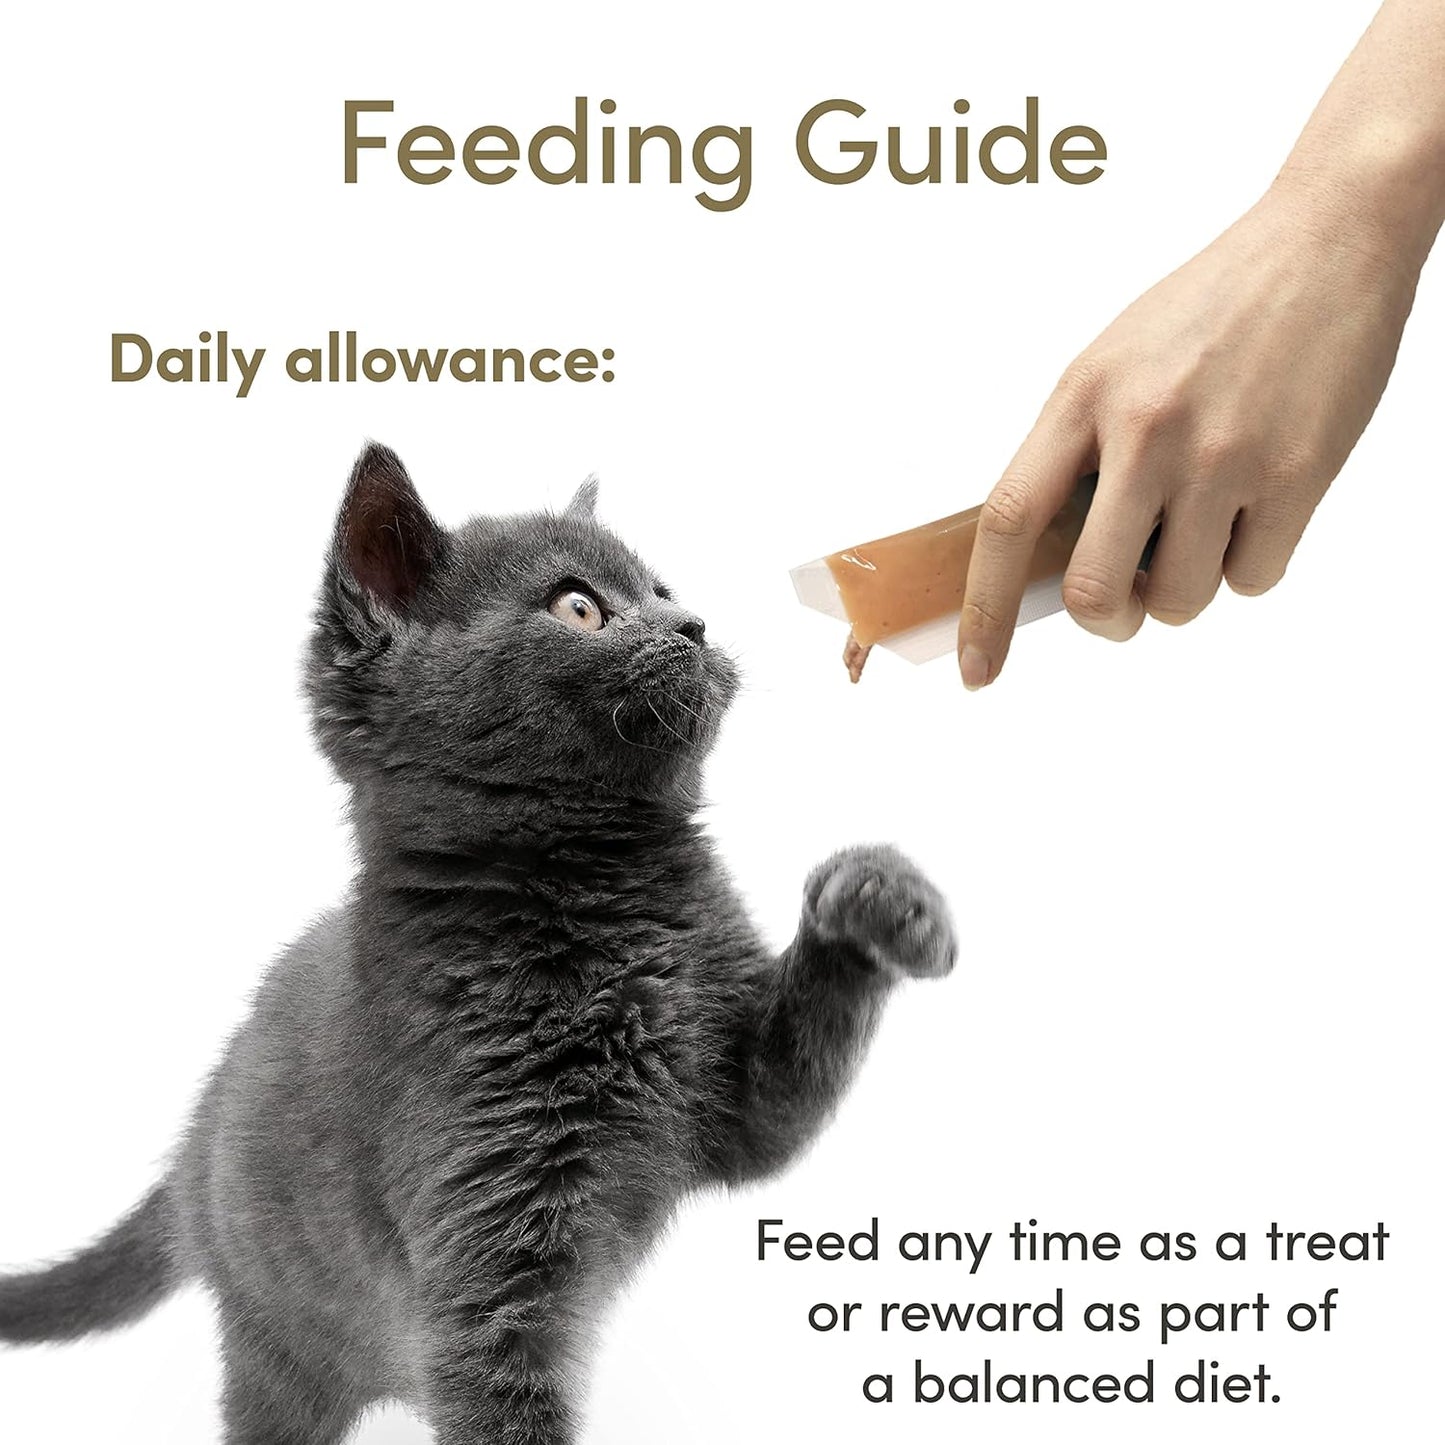 Applaws Tuna Puree Grain Free Cat Treat, 8x7g